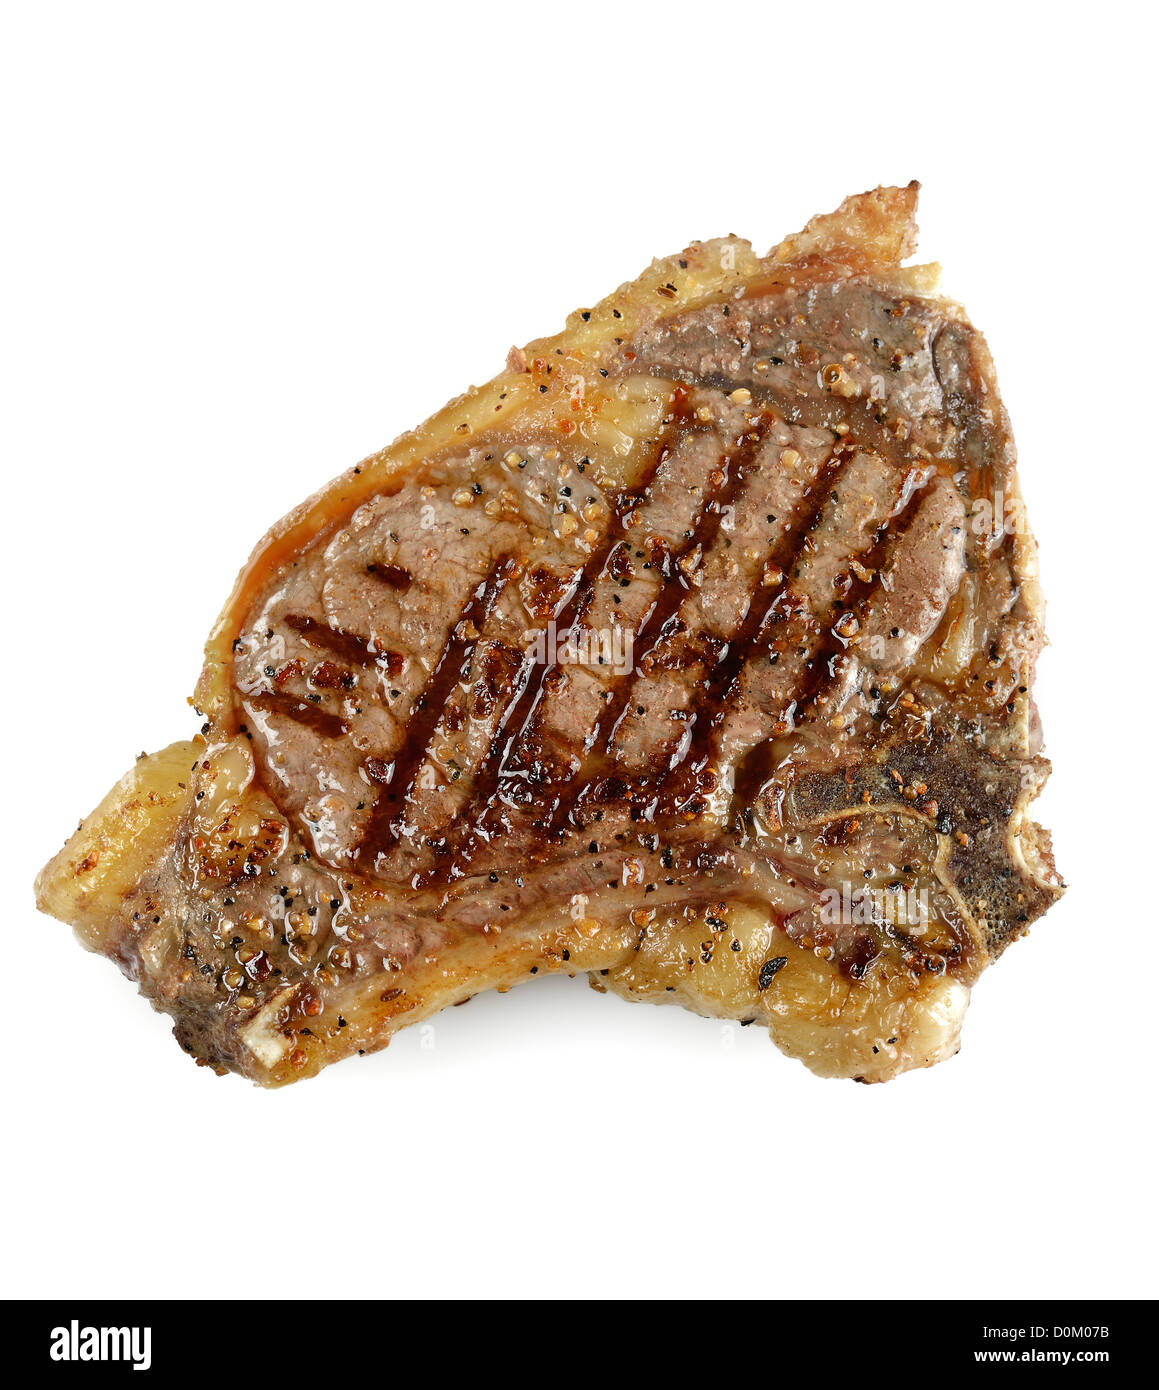 T-bone steak grillé sur fond blanc Banque D'Images